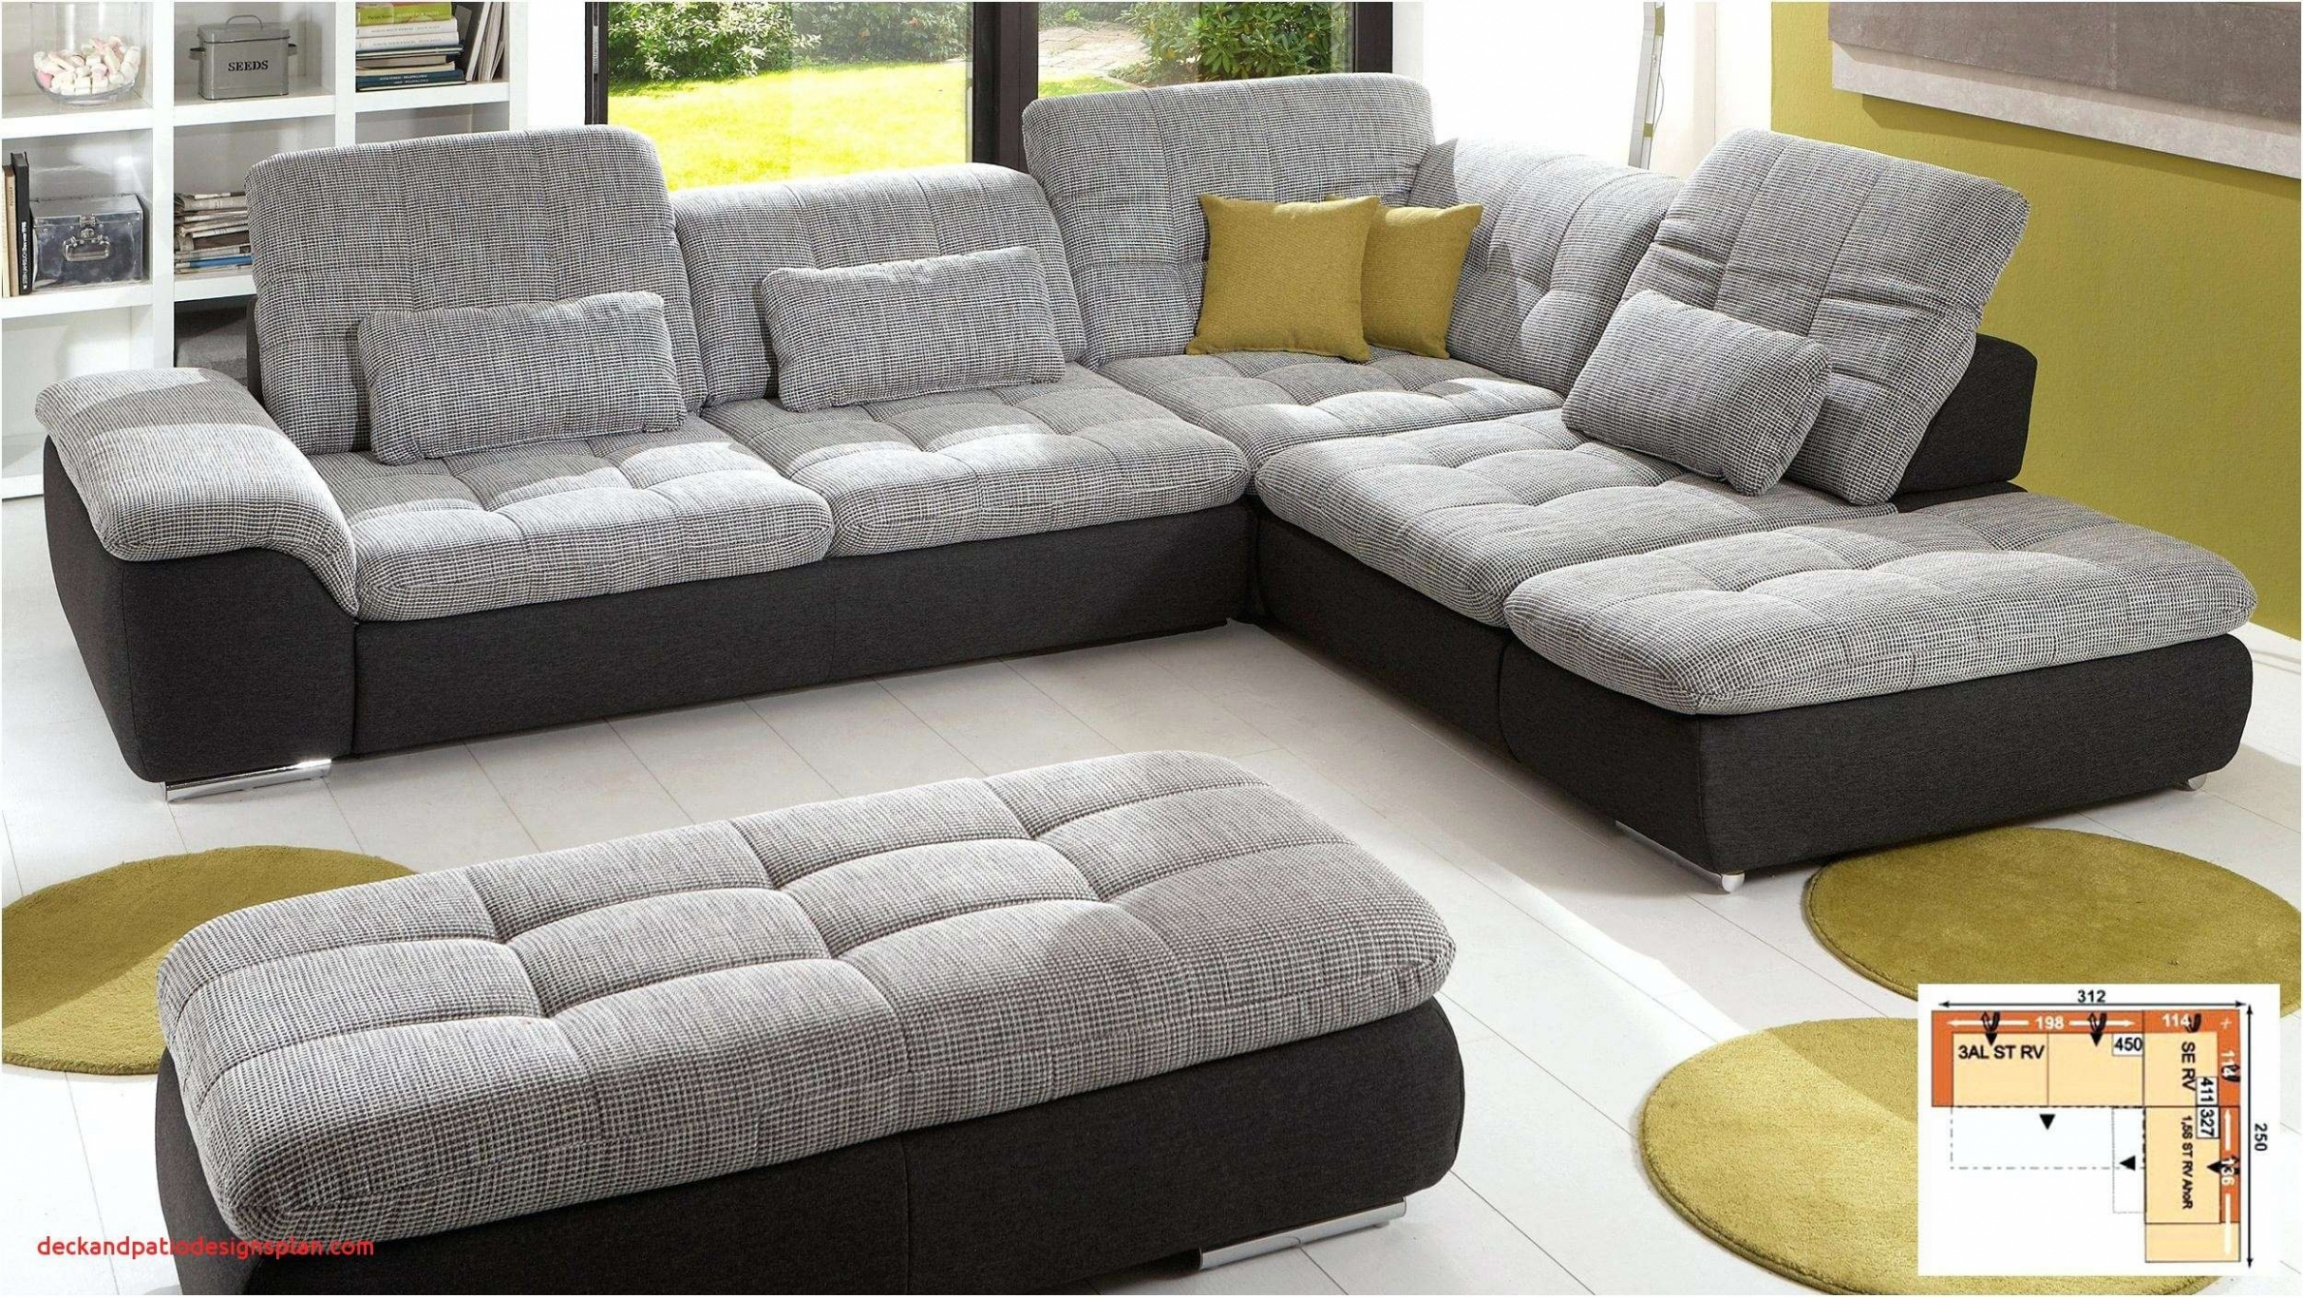 sofa mit kissen dekorieren yct projekte graue couch dekorieren graue couch dekorieren 1